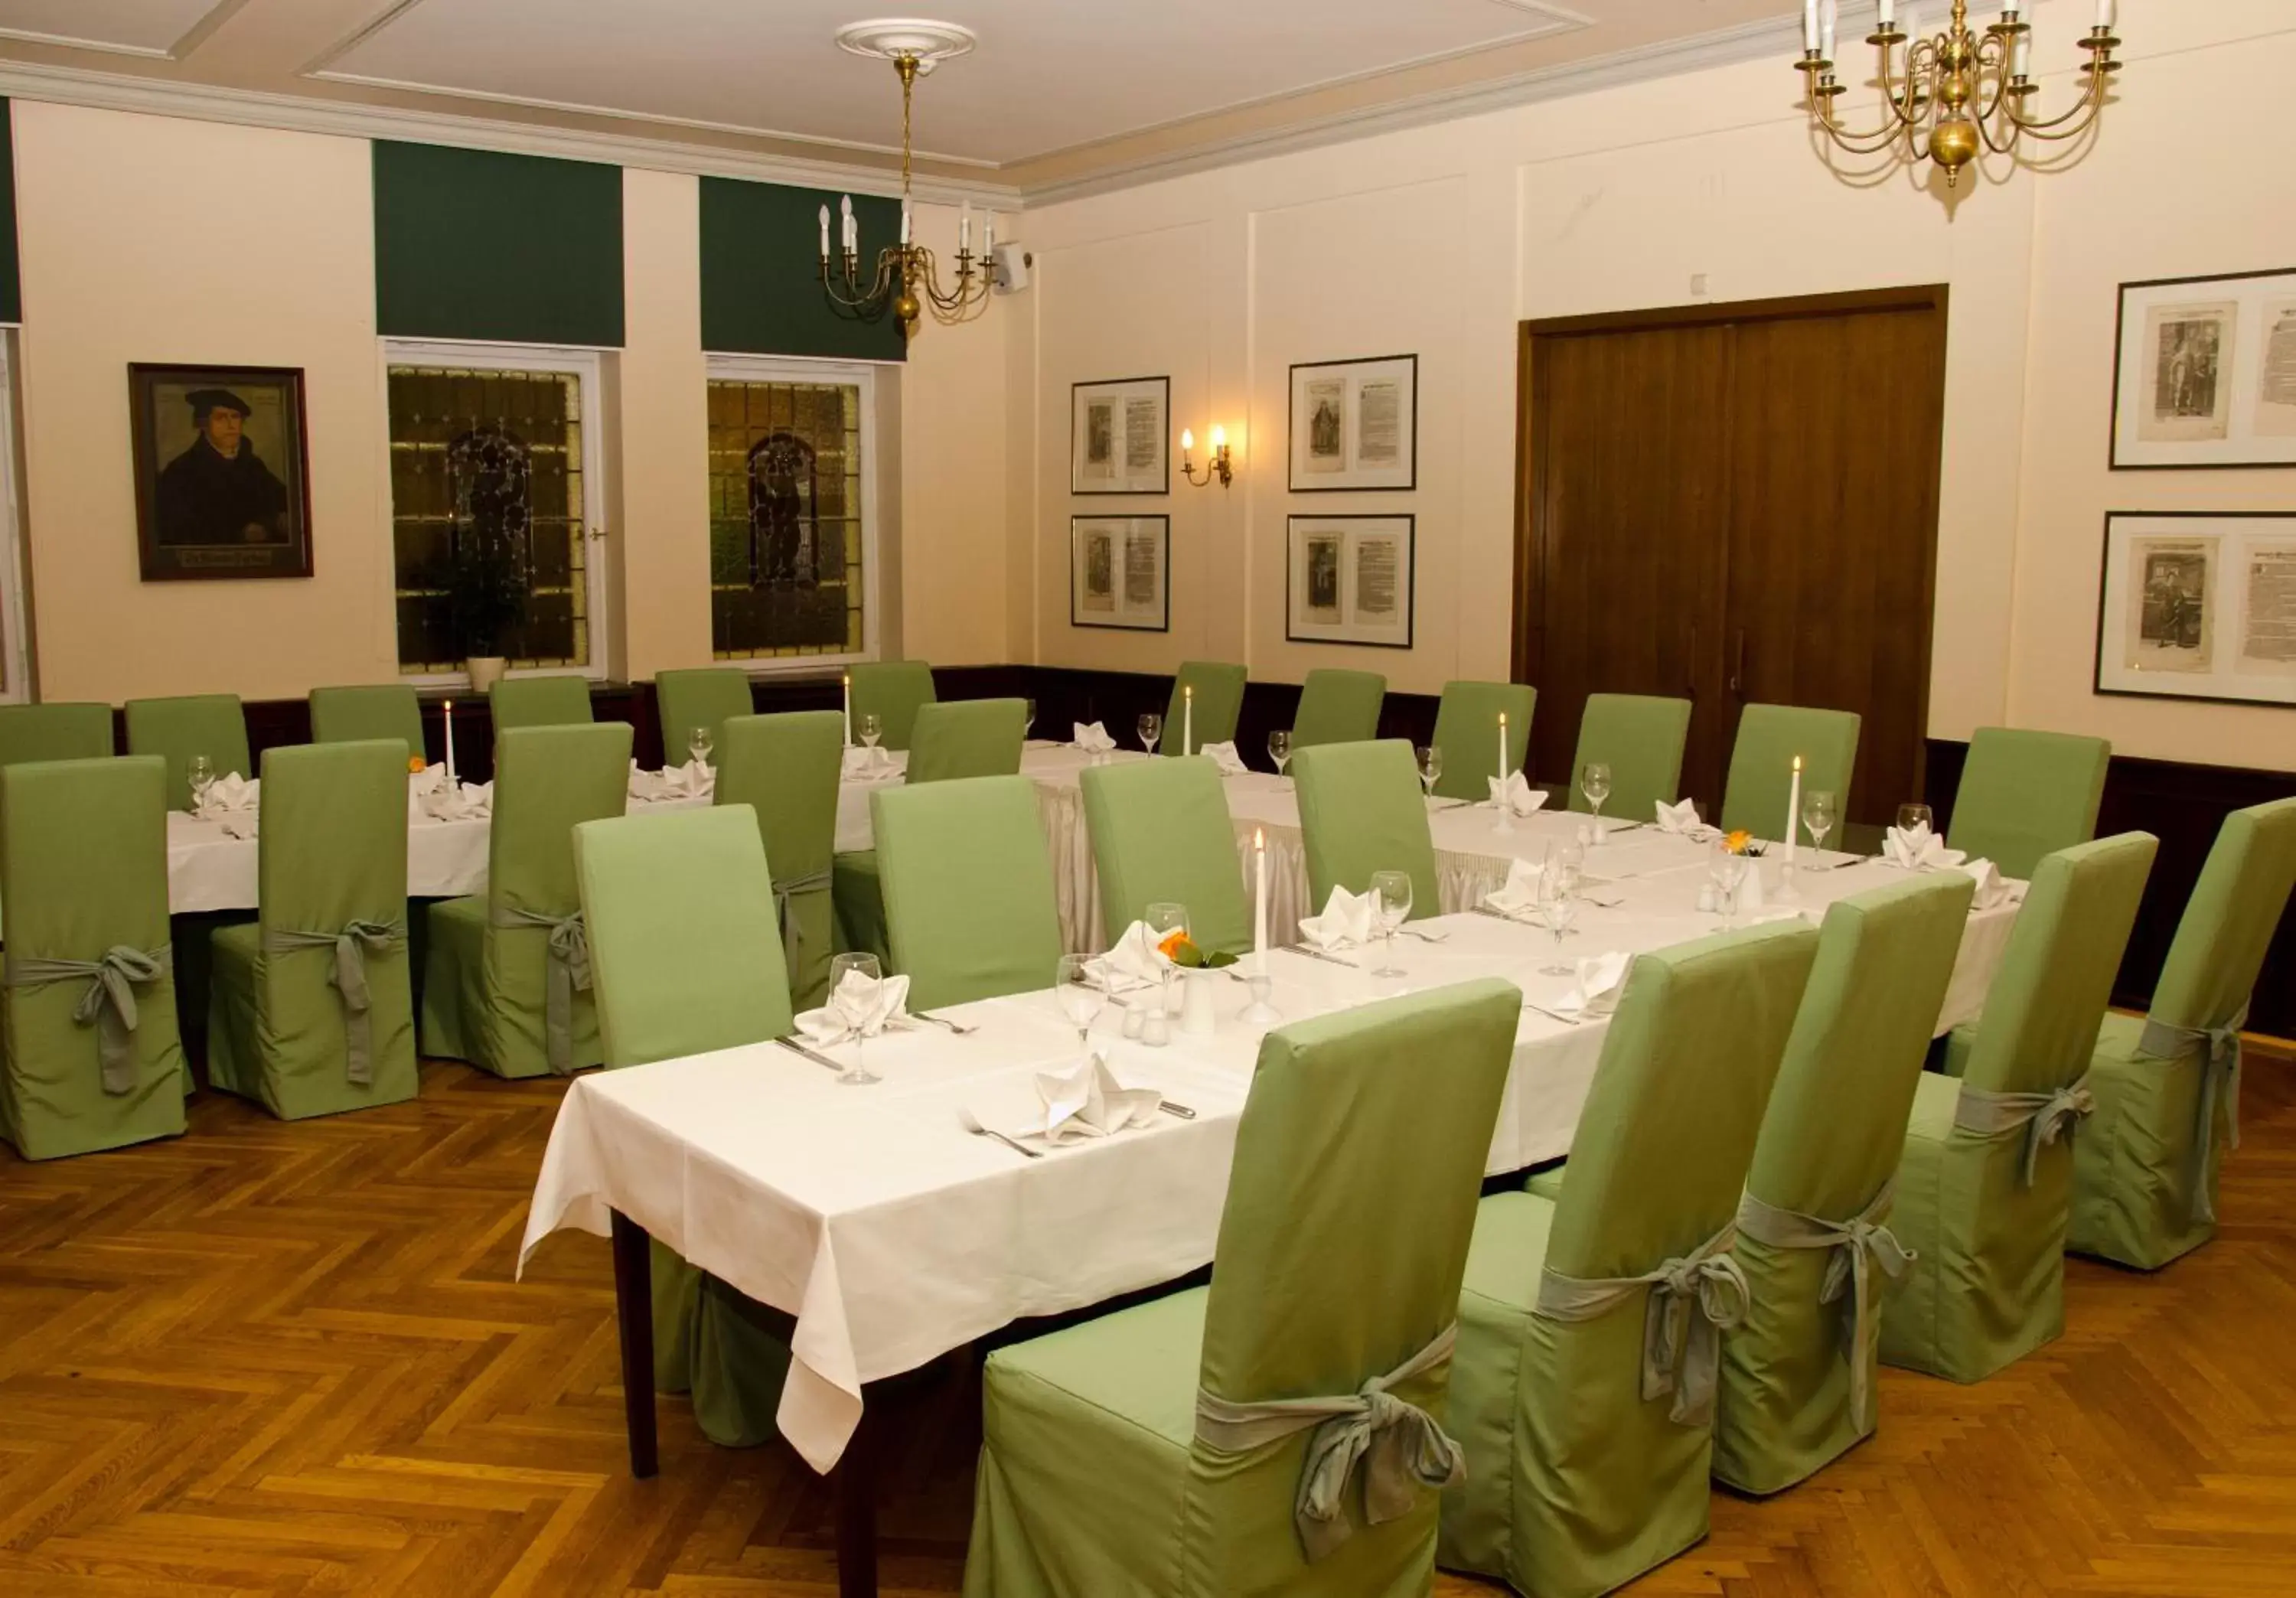 Banquet/Function facilities, Banquet Facilities in Schwarzer Bär Jena